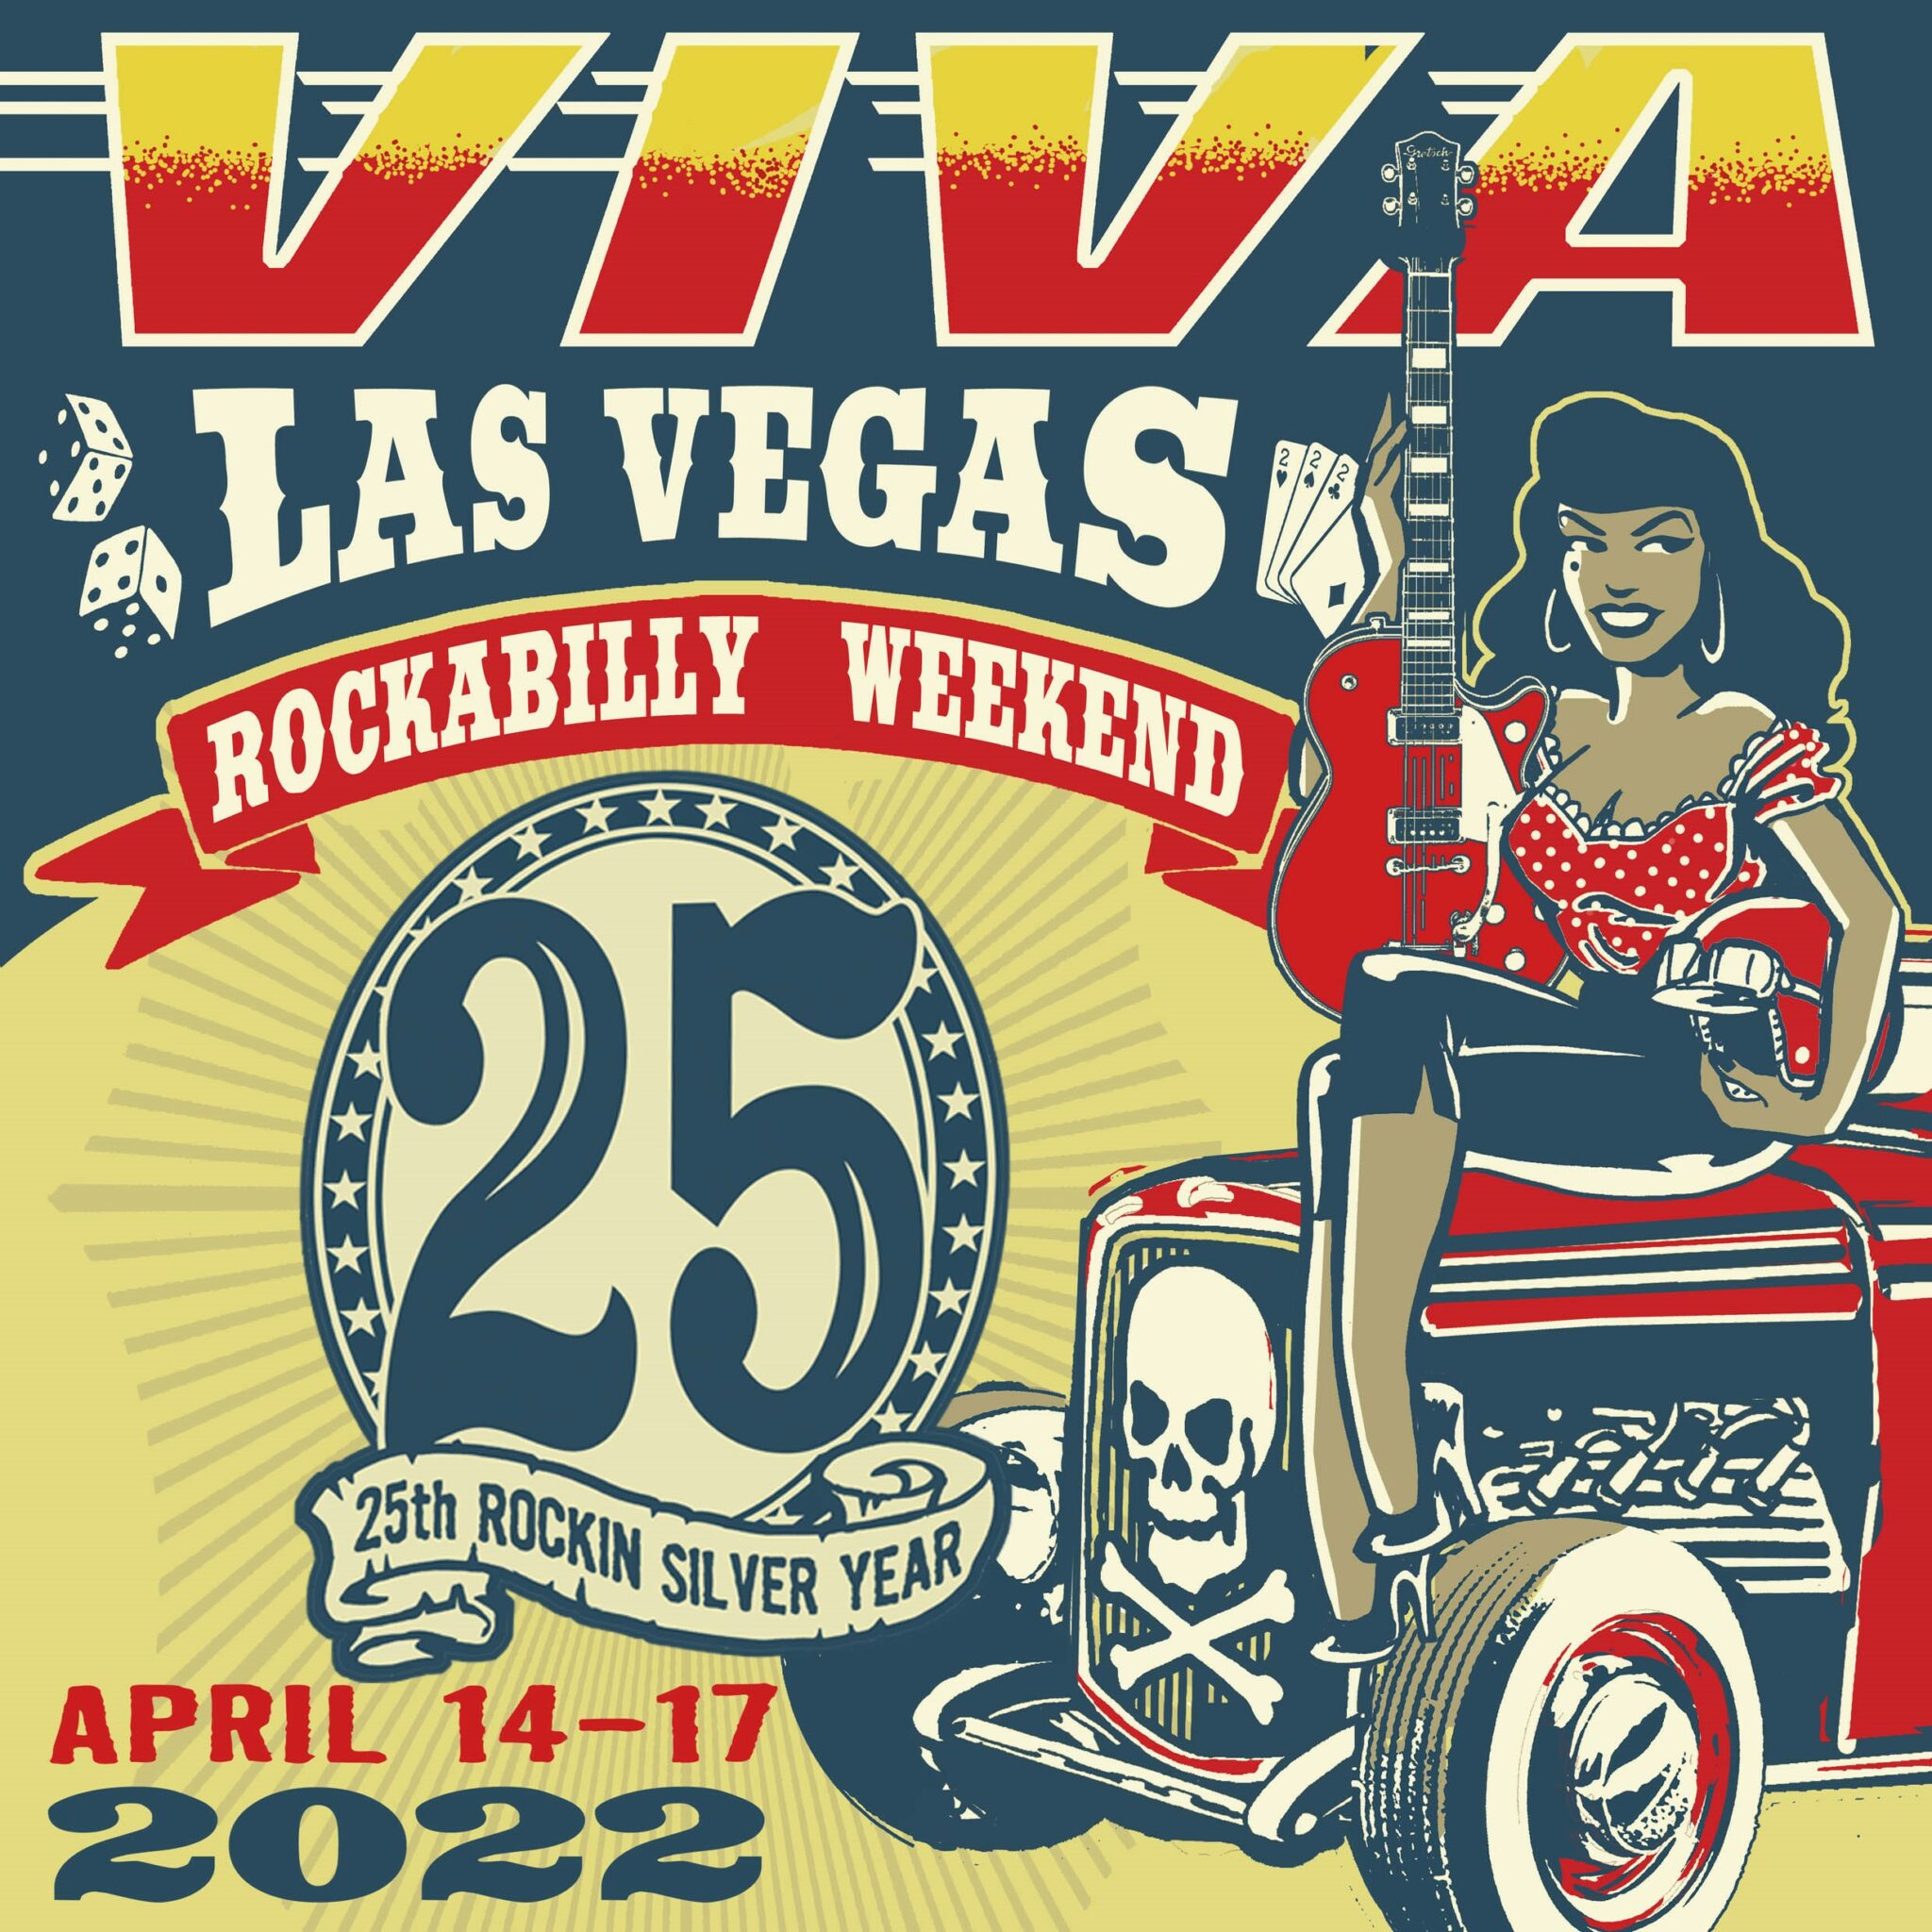 VIVA Las Vegas